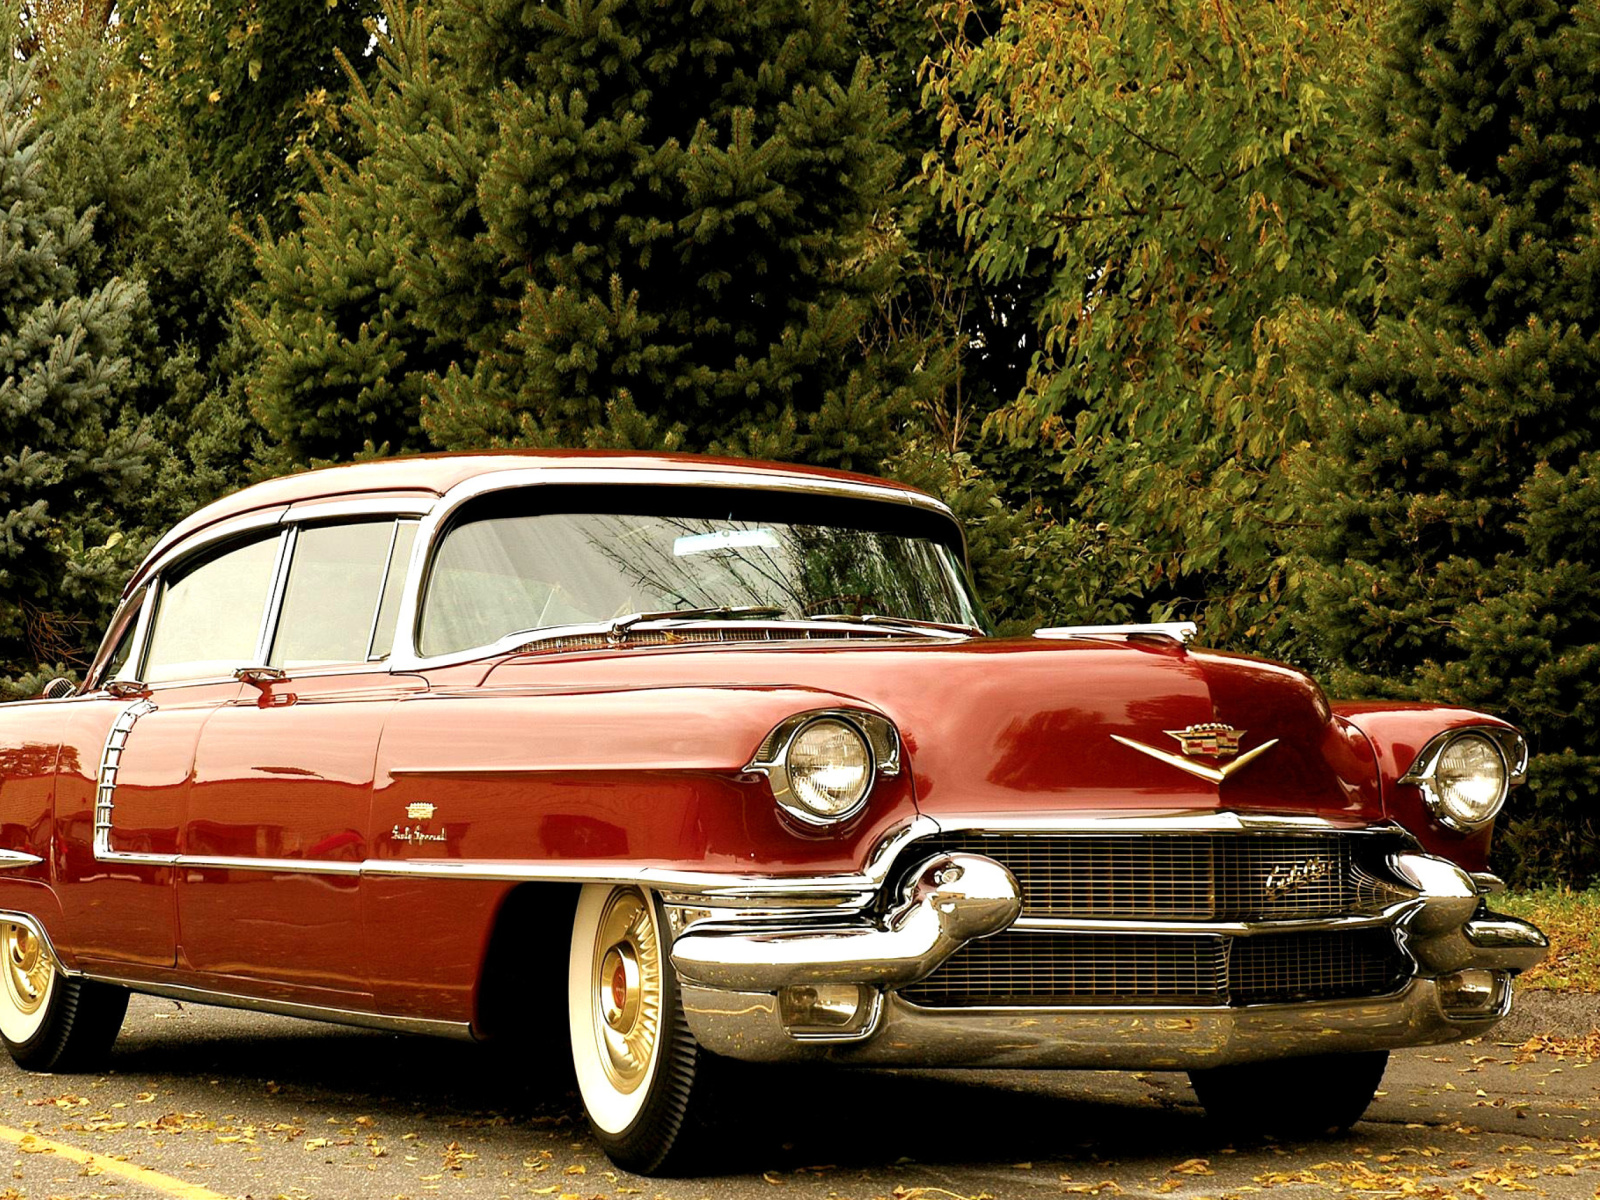 1956 Cadillac Maharani wallpaper 1600x1200